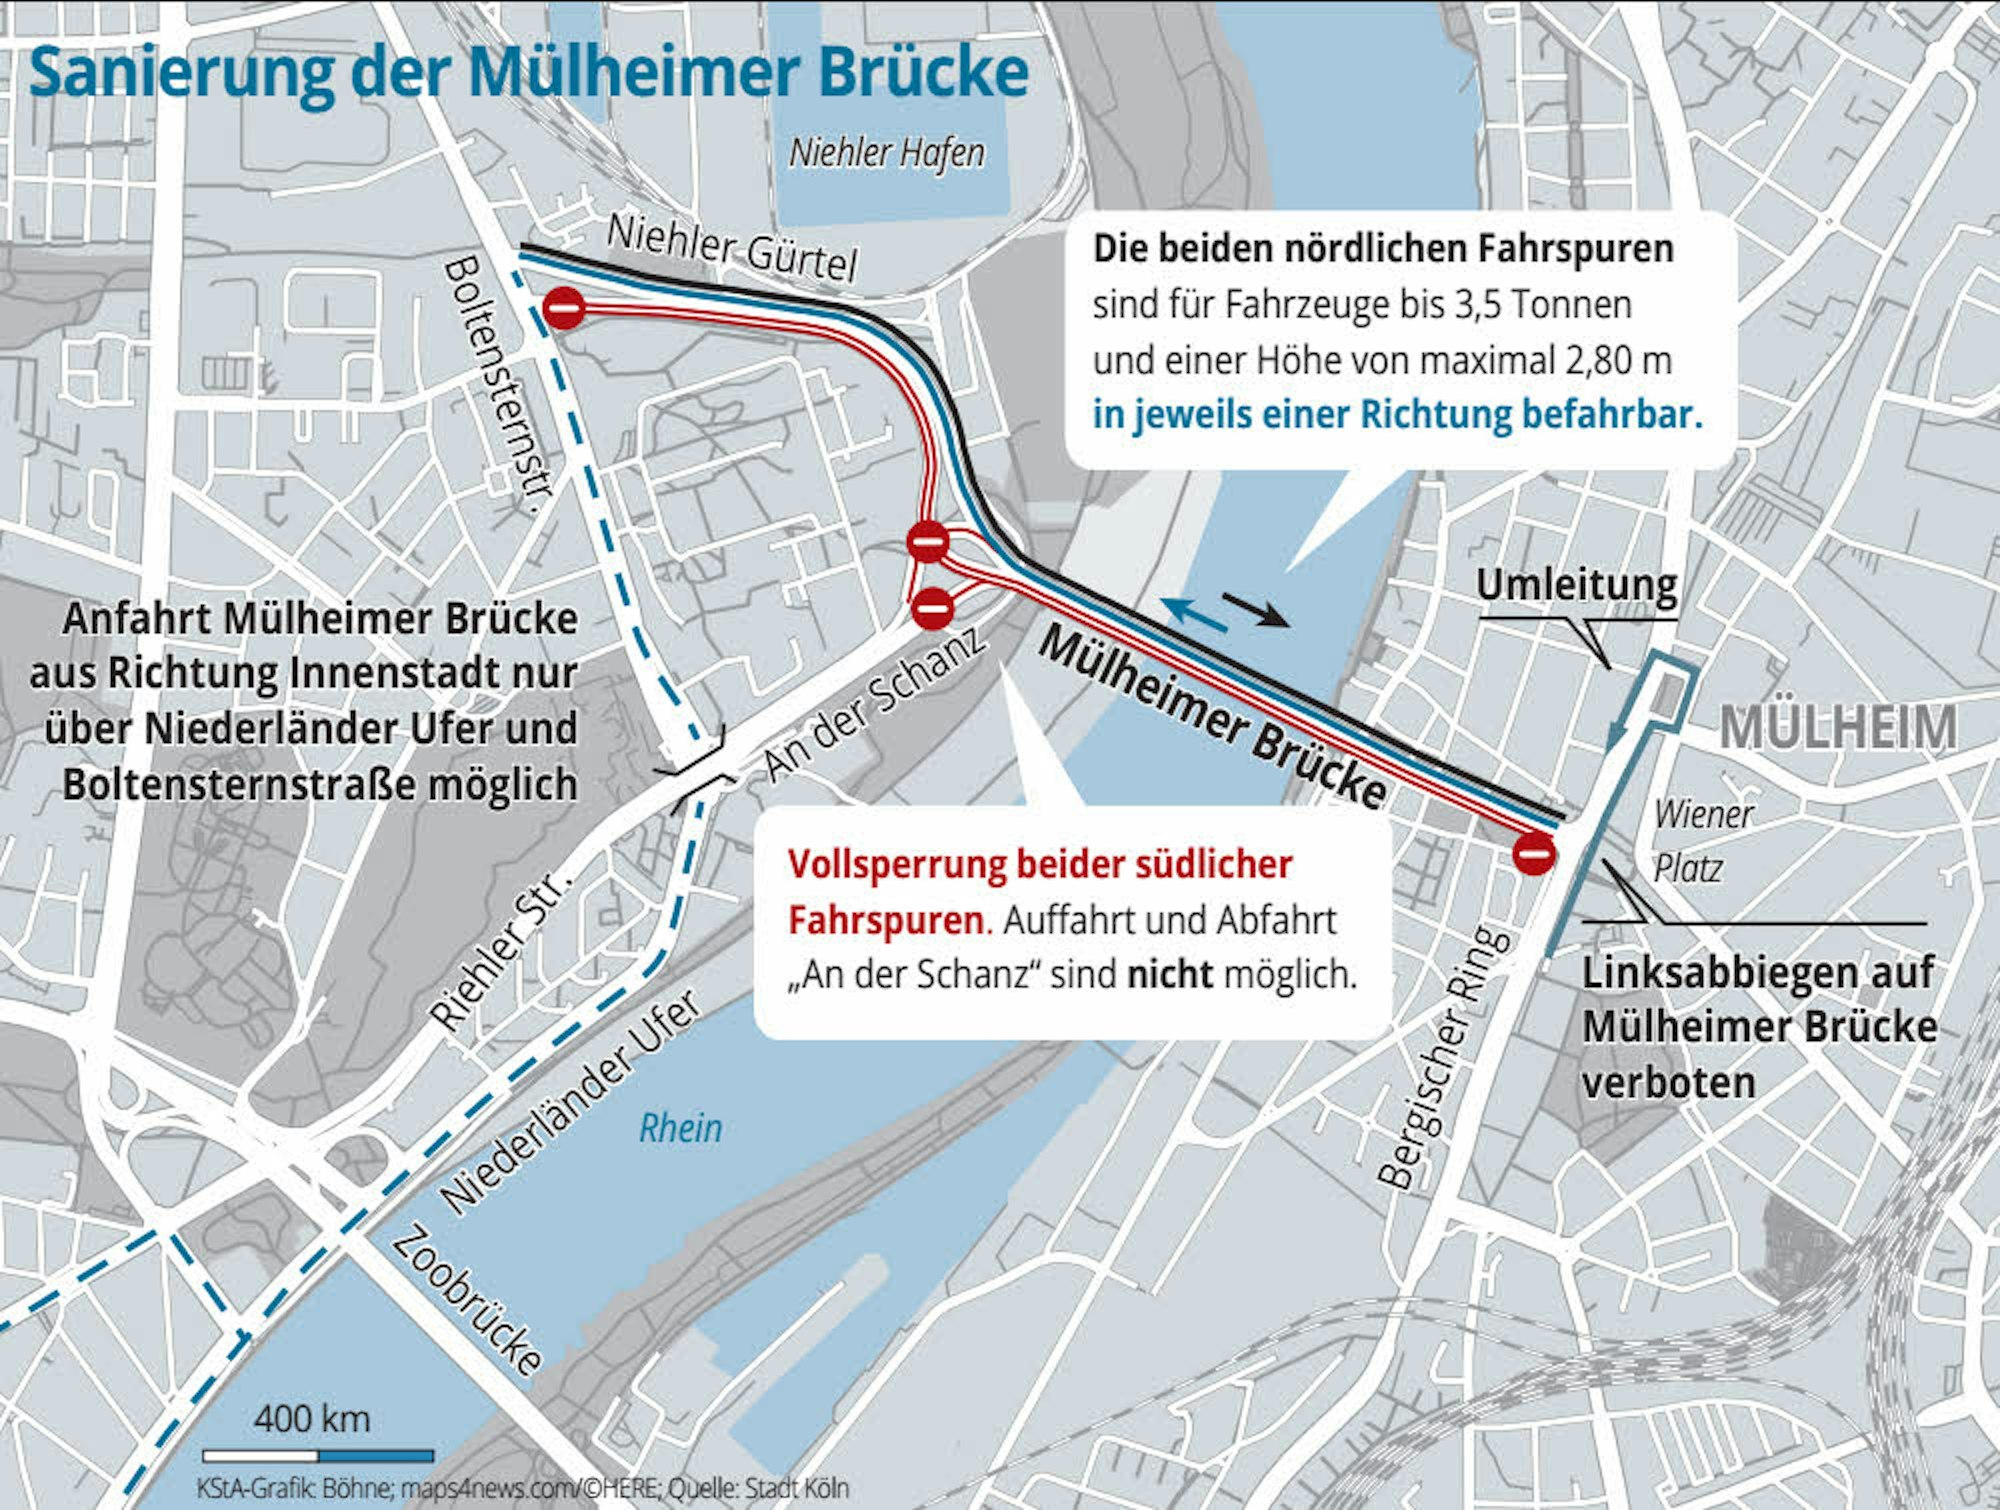 Sanierung der Mülheimer Brücke